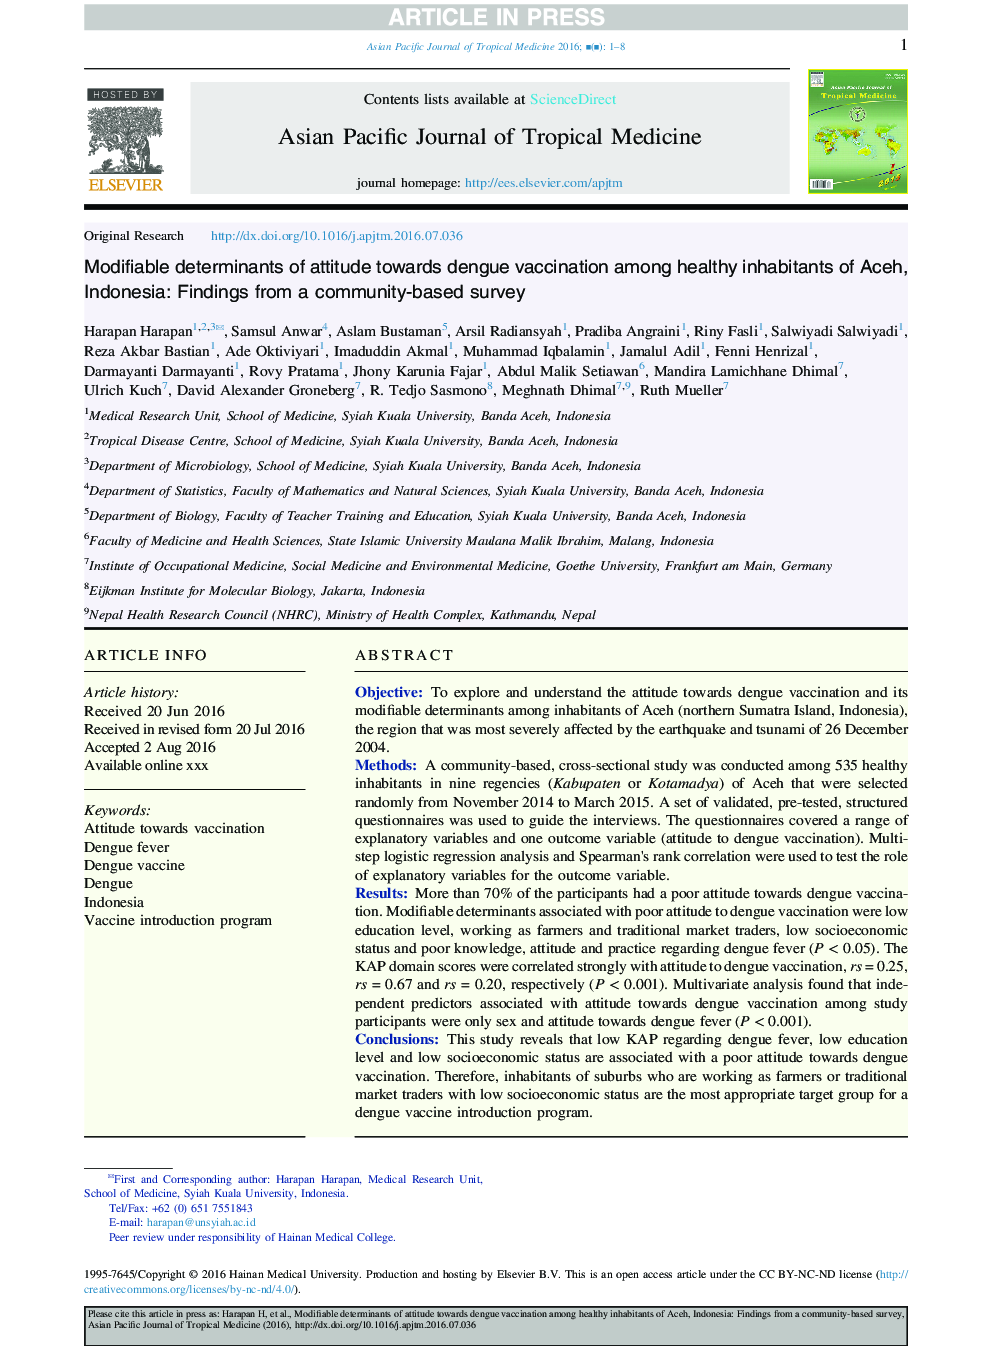 عوامل تعیین کننده قابل تغییر نگرش نسبت به واکسیناسیون دونگ در میان ساکنان سالم آچه، اندونزی: یافته های یک نظرسنجی مبتنی بر جامعه 